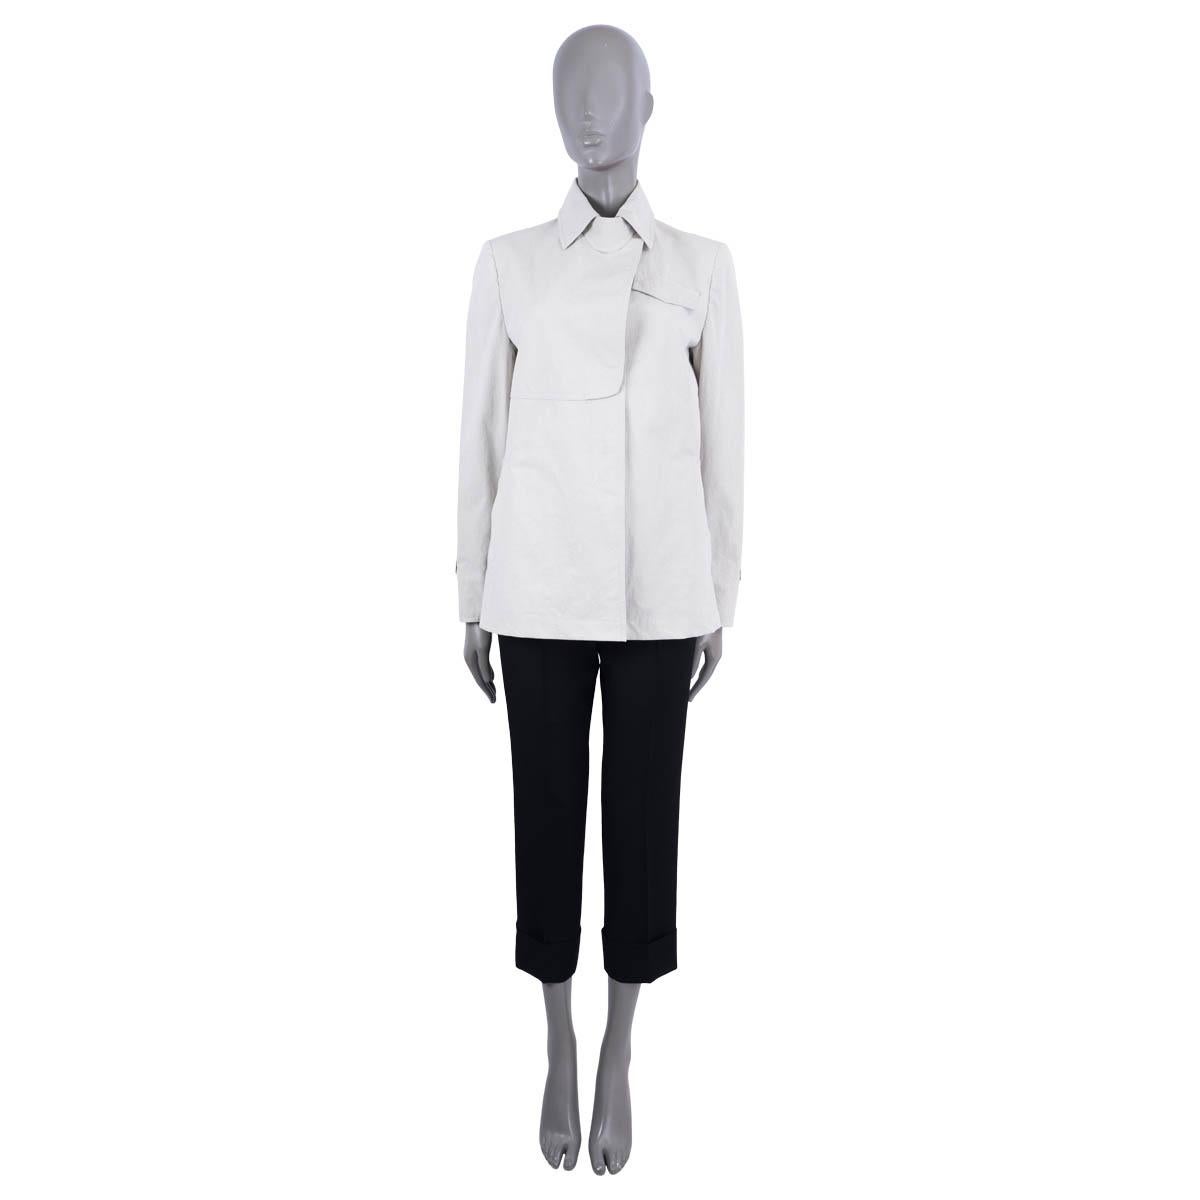 Veste Brunello Cucinelli 100% authentique en coton gris clair (100%). Il comporte une poche à rabat sur la poitrine, deux poches sur le devant et des poignets ceinturés. S'ouvre par quatre boutons dissimulés sur le devant. Doublure en soie (92%) et